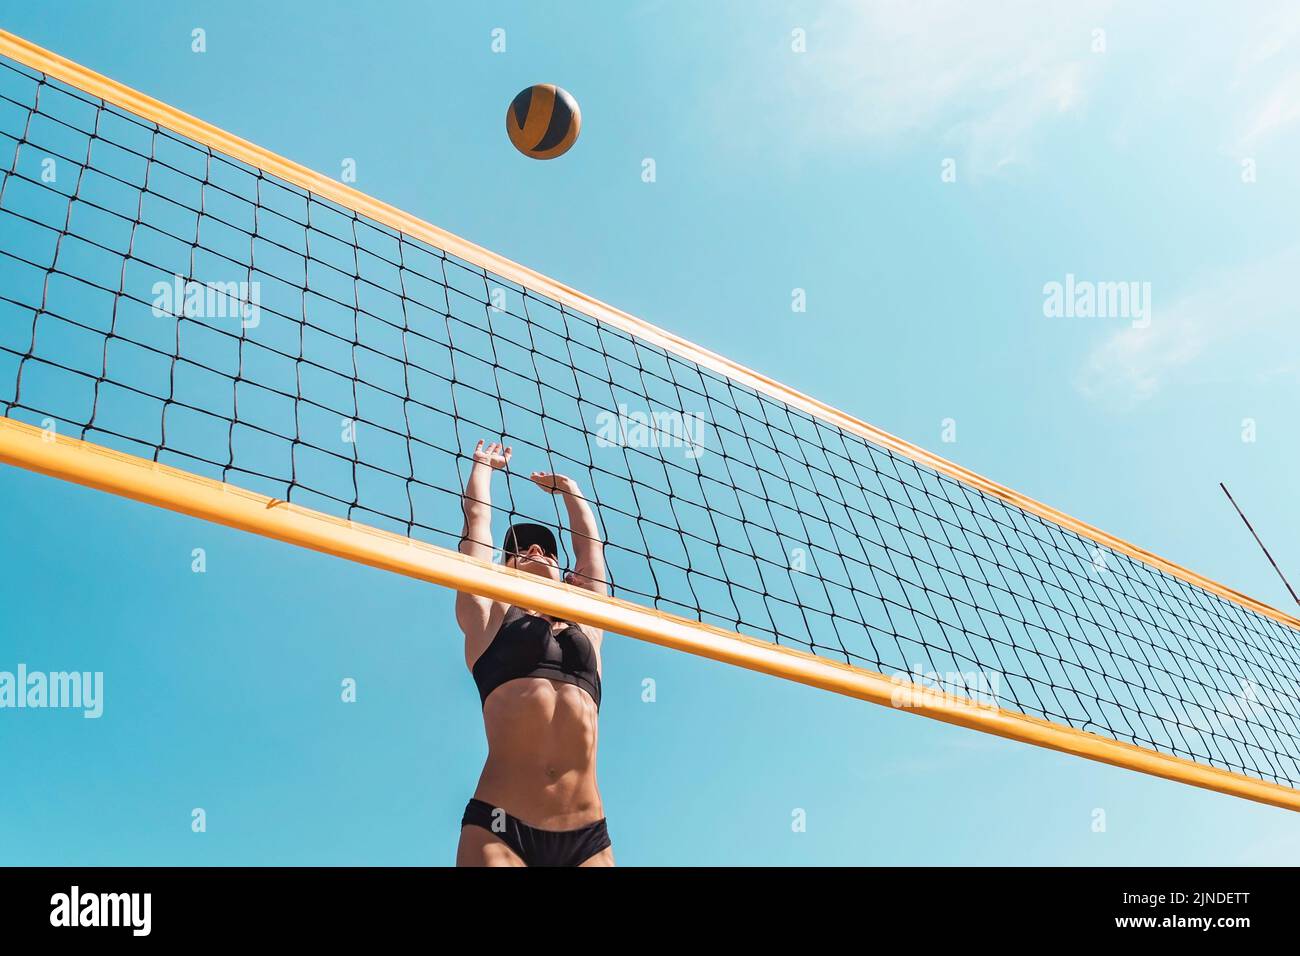 Adolescente à jouer au volleyball de plage. Championnat de beach-volley. La femme est pour la balle. jetant une volley-ball jaune sur le net. Victo Banque D'Images